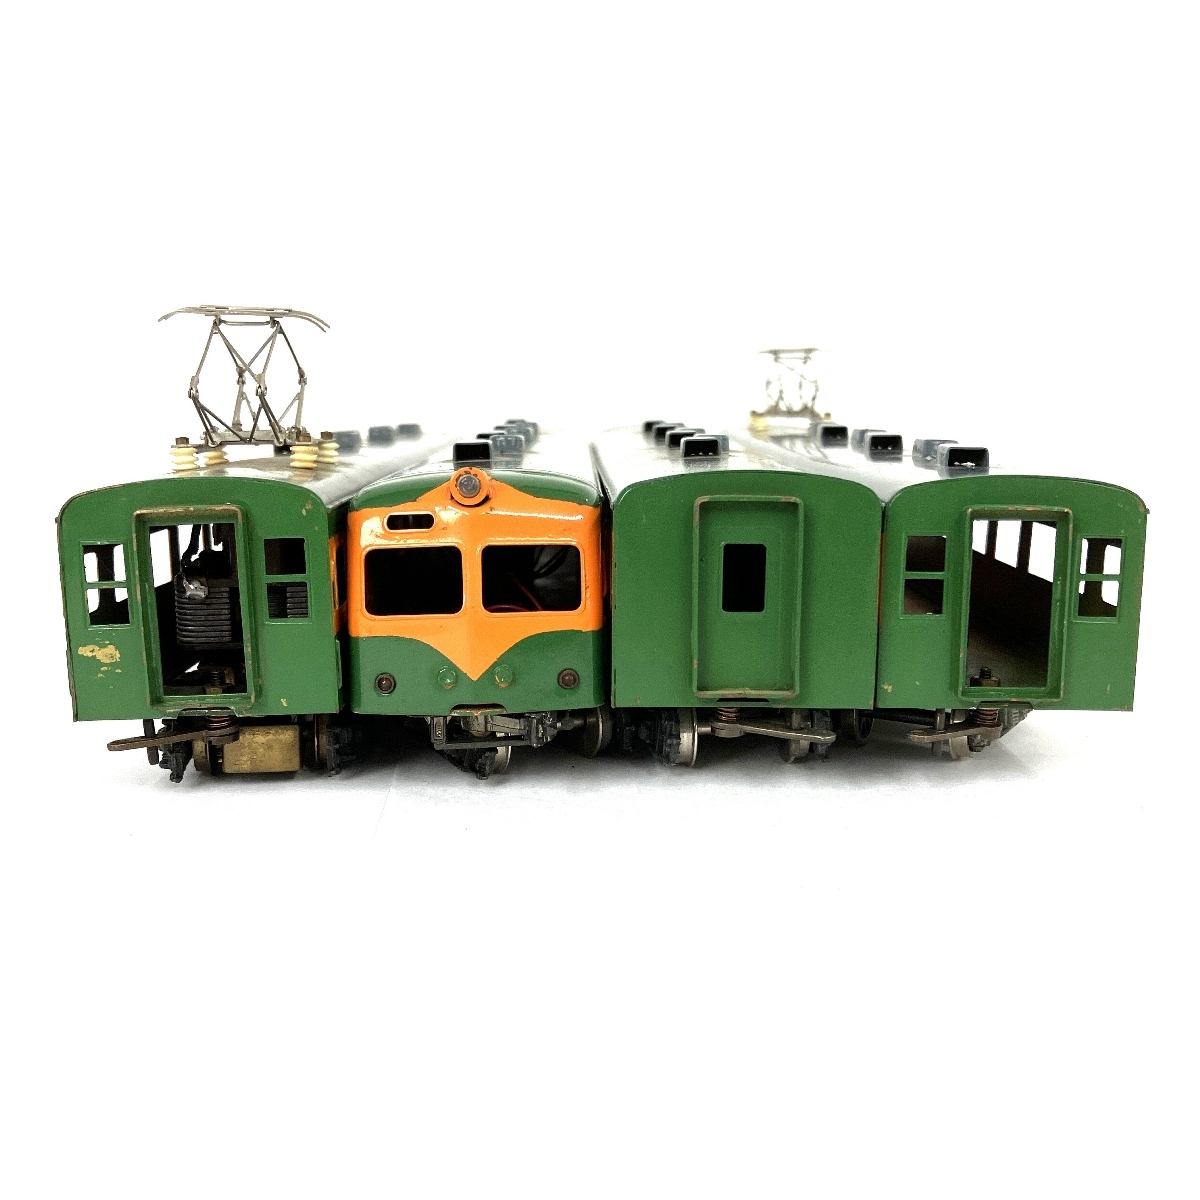 kawai model モハ80 サロ85 クハ86 4車両セット 鉄道模型 HOゲージ ジャンク Y8878921_画像5